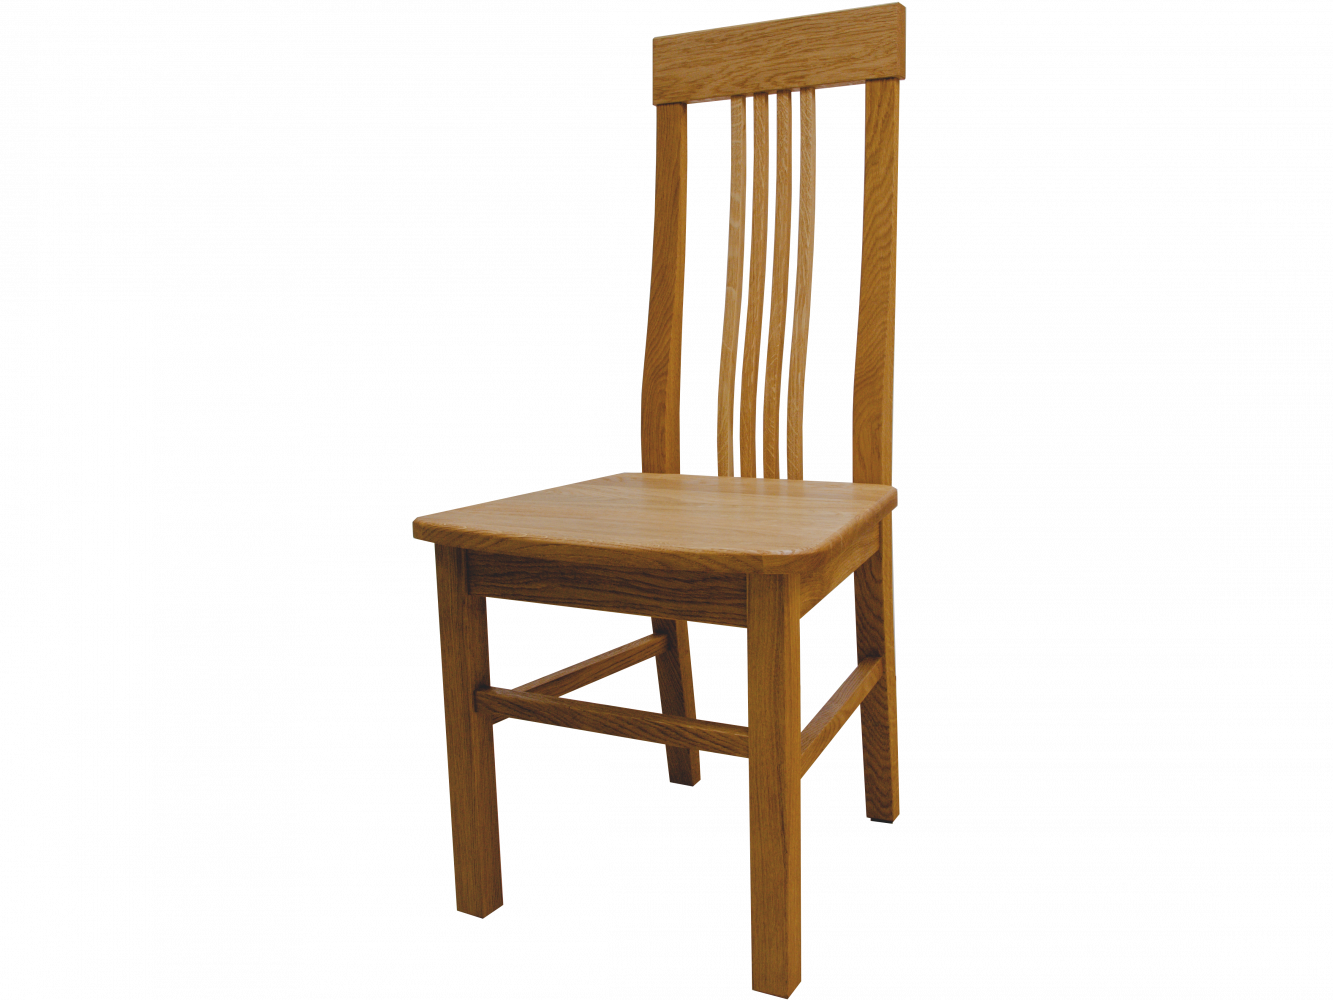 Dubová designová celodřevěná židle